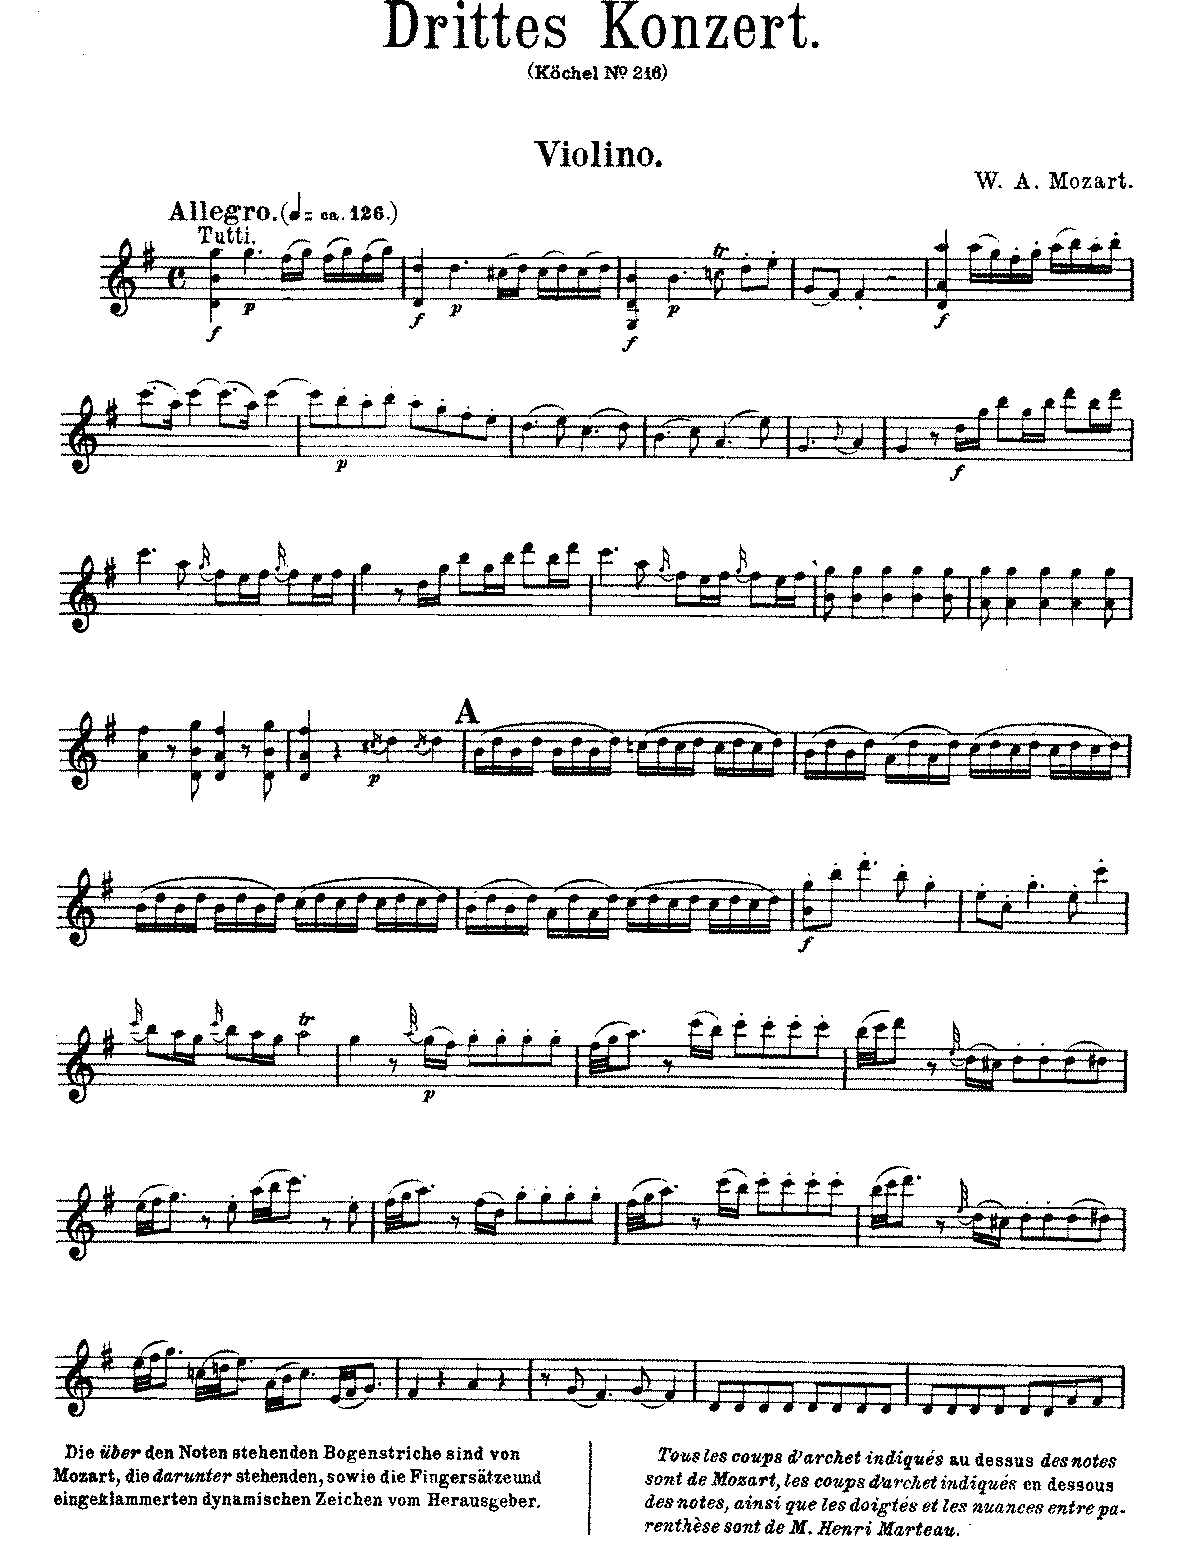 W.A. Mozart Violinkonzert Nr 3 in G-Dur, K. 216